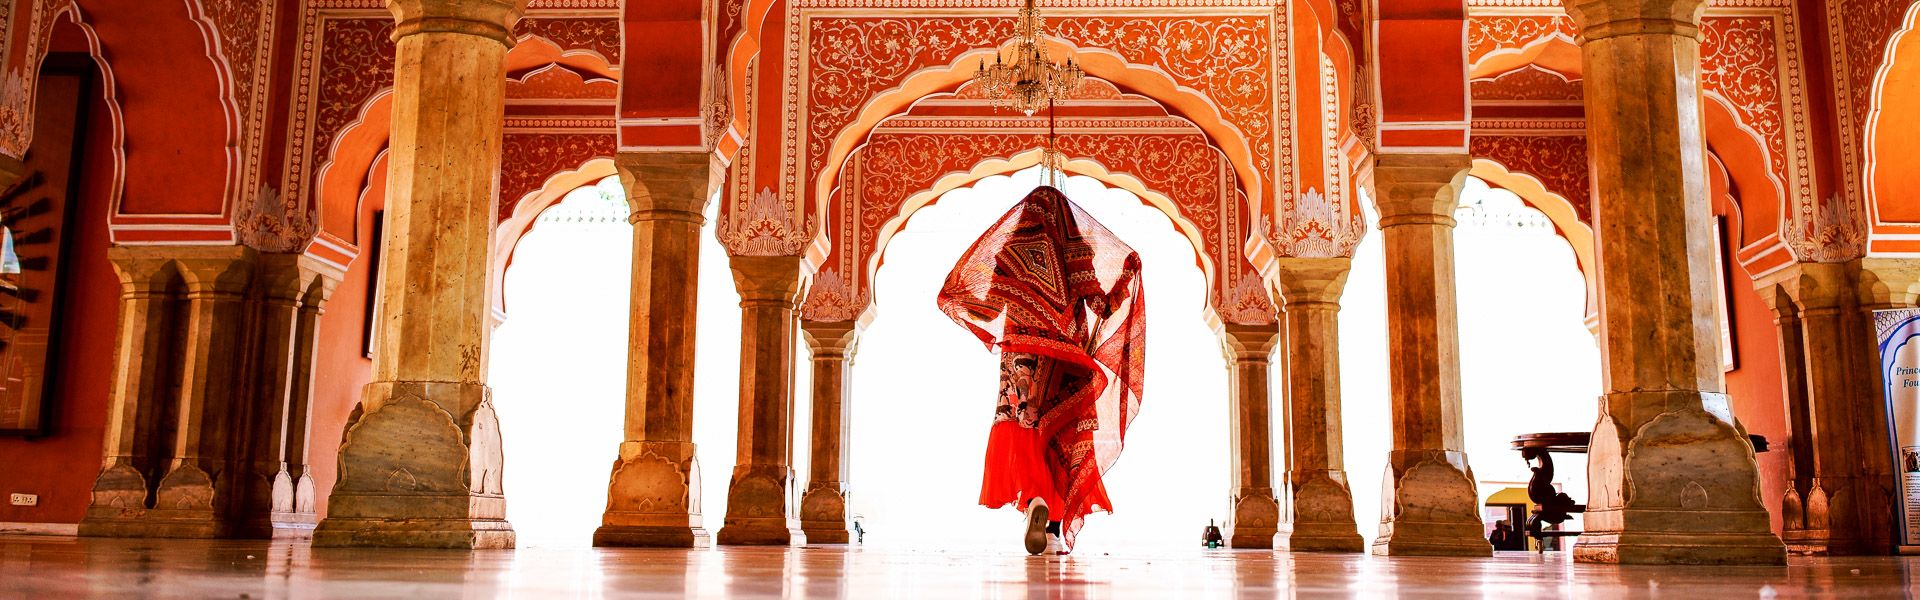 Frau im indischen Palast |  redtea, iStockphoto.com / Chamleon